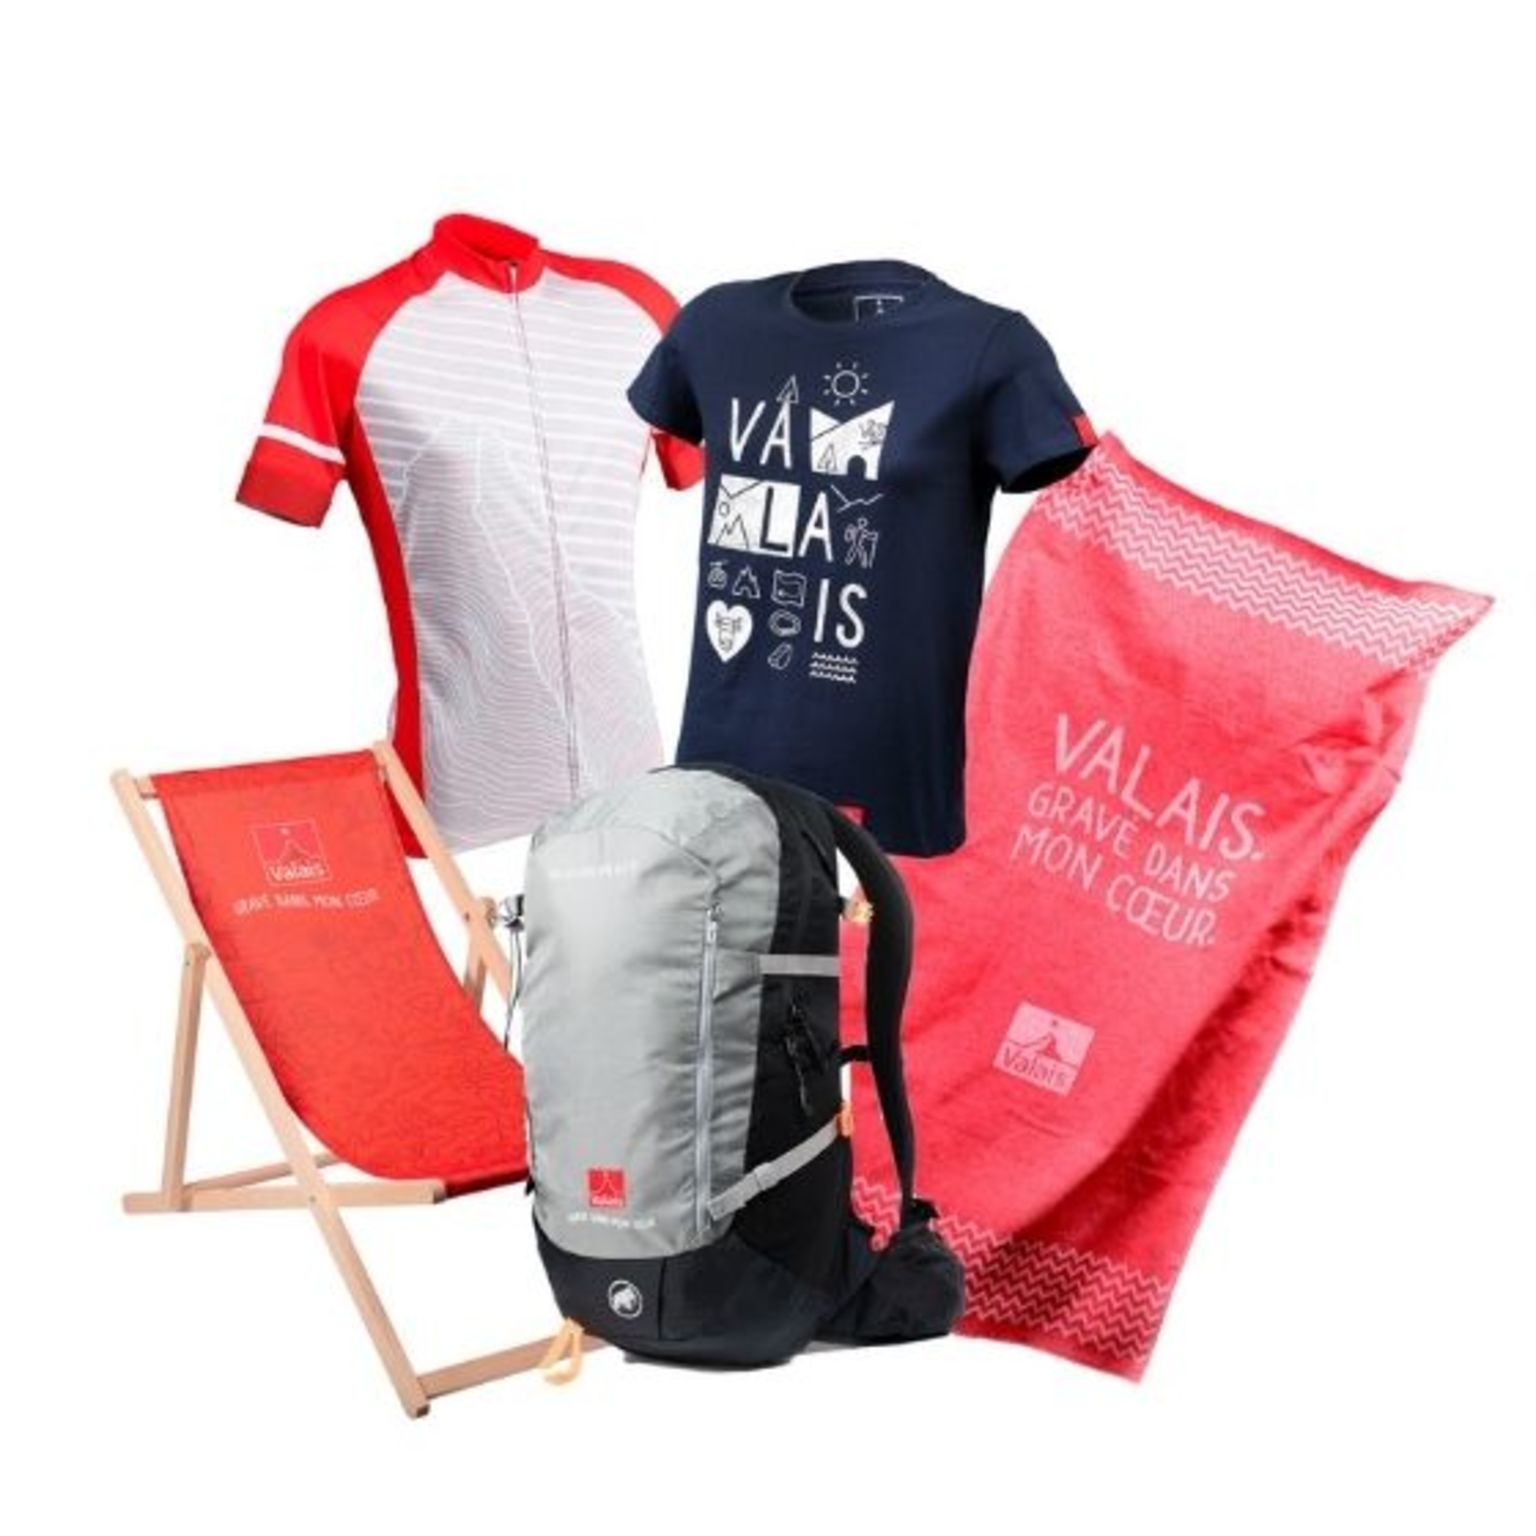 Chaise longue, t-shirt, linge, sac à dos, boutique Valais, suisse